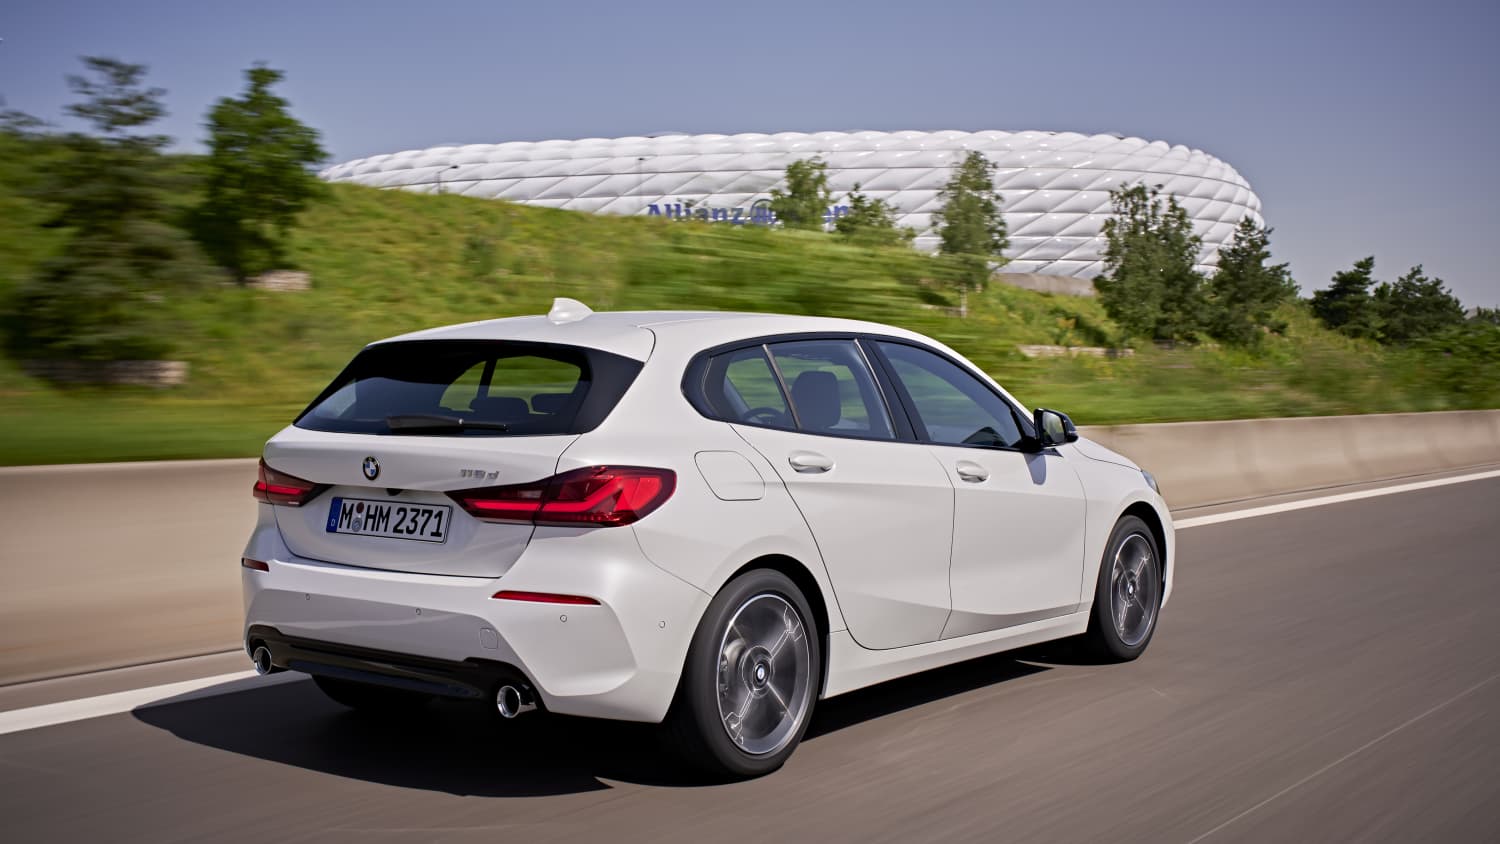 Vorab-Fahrbericht: BMW 1er F40 mit Frontantrieb im Vergleich